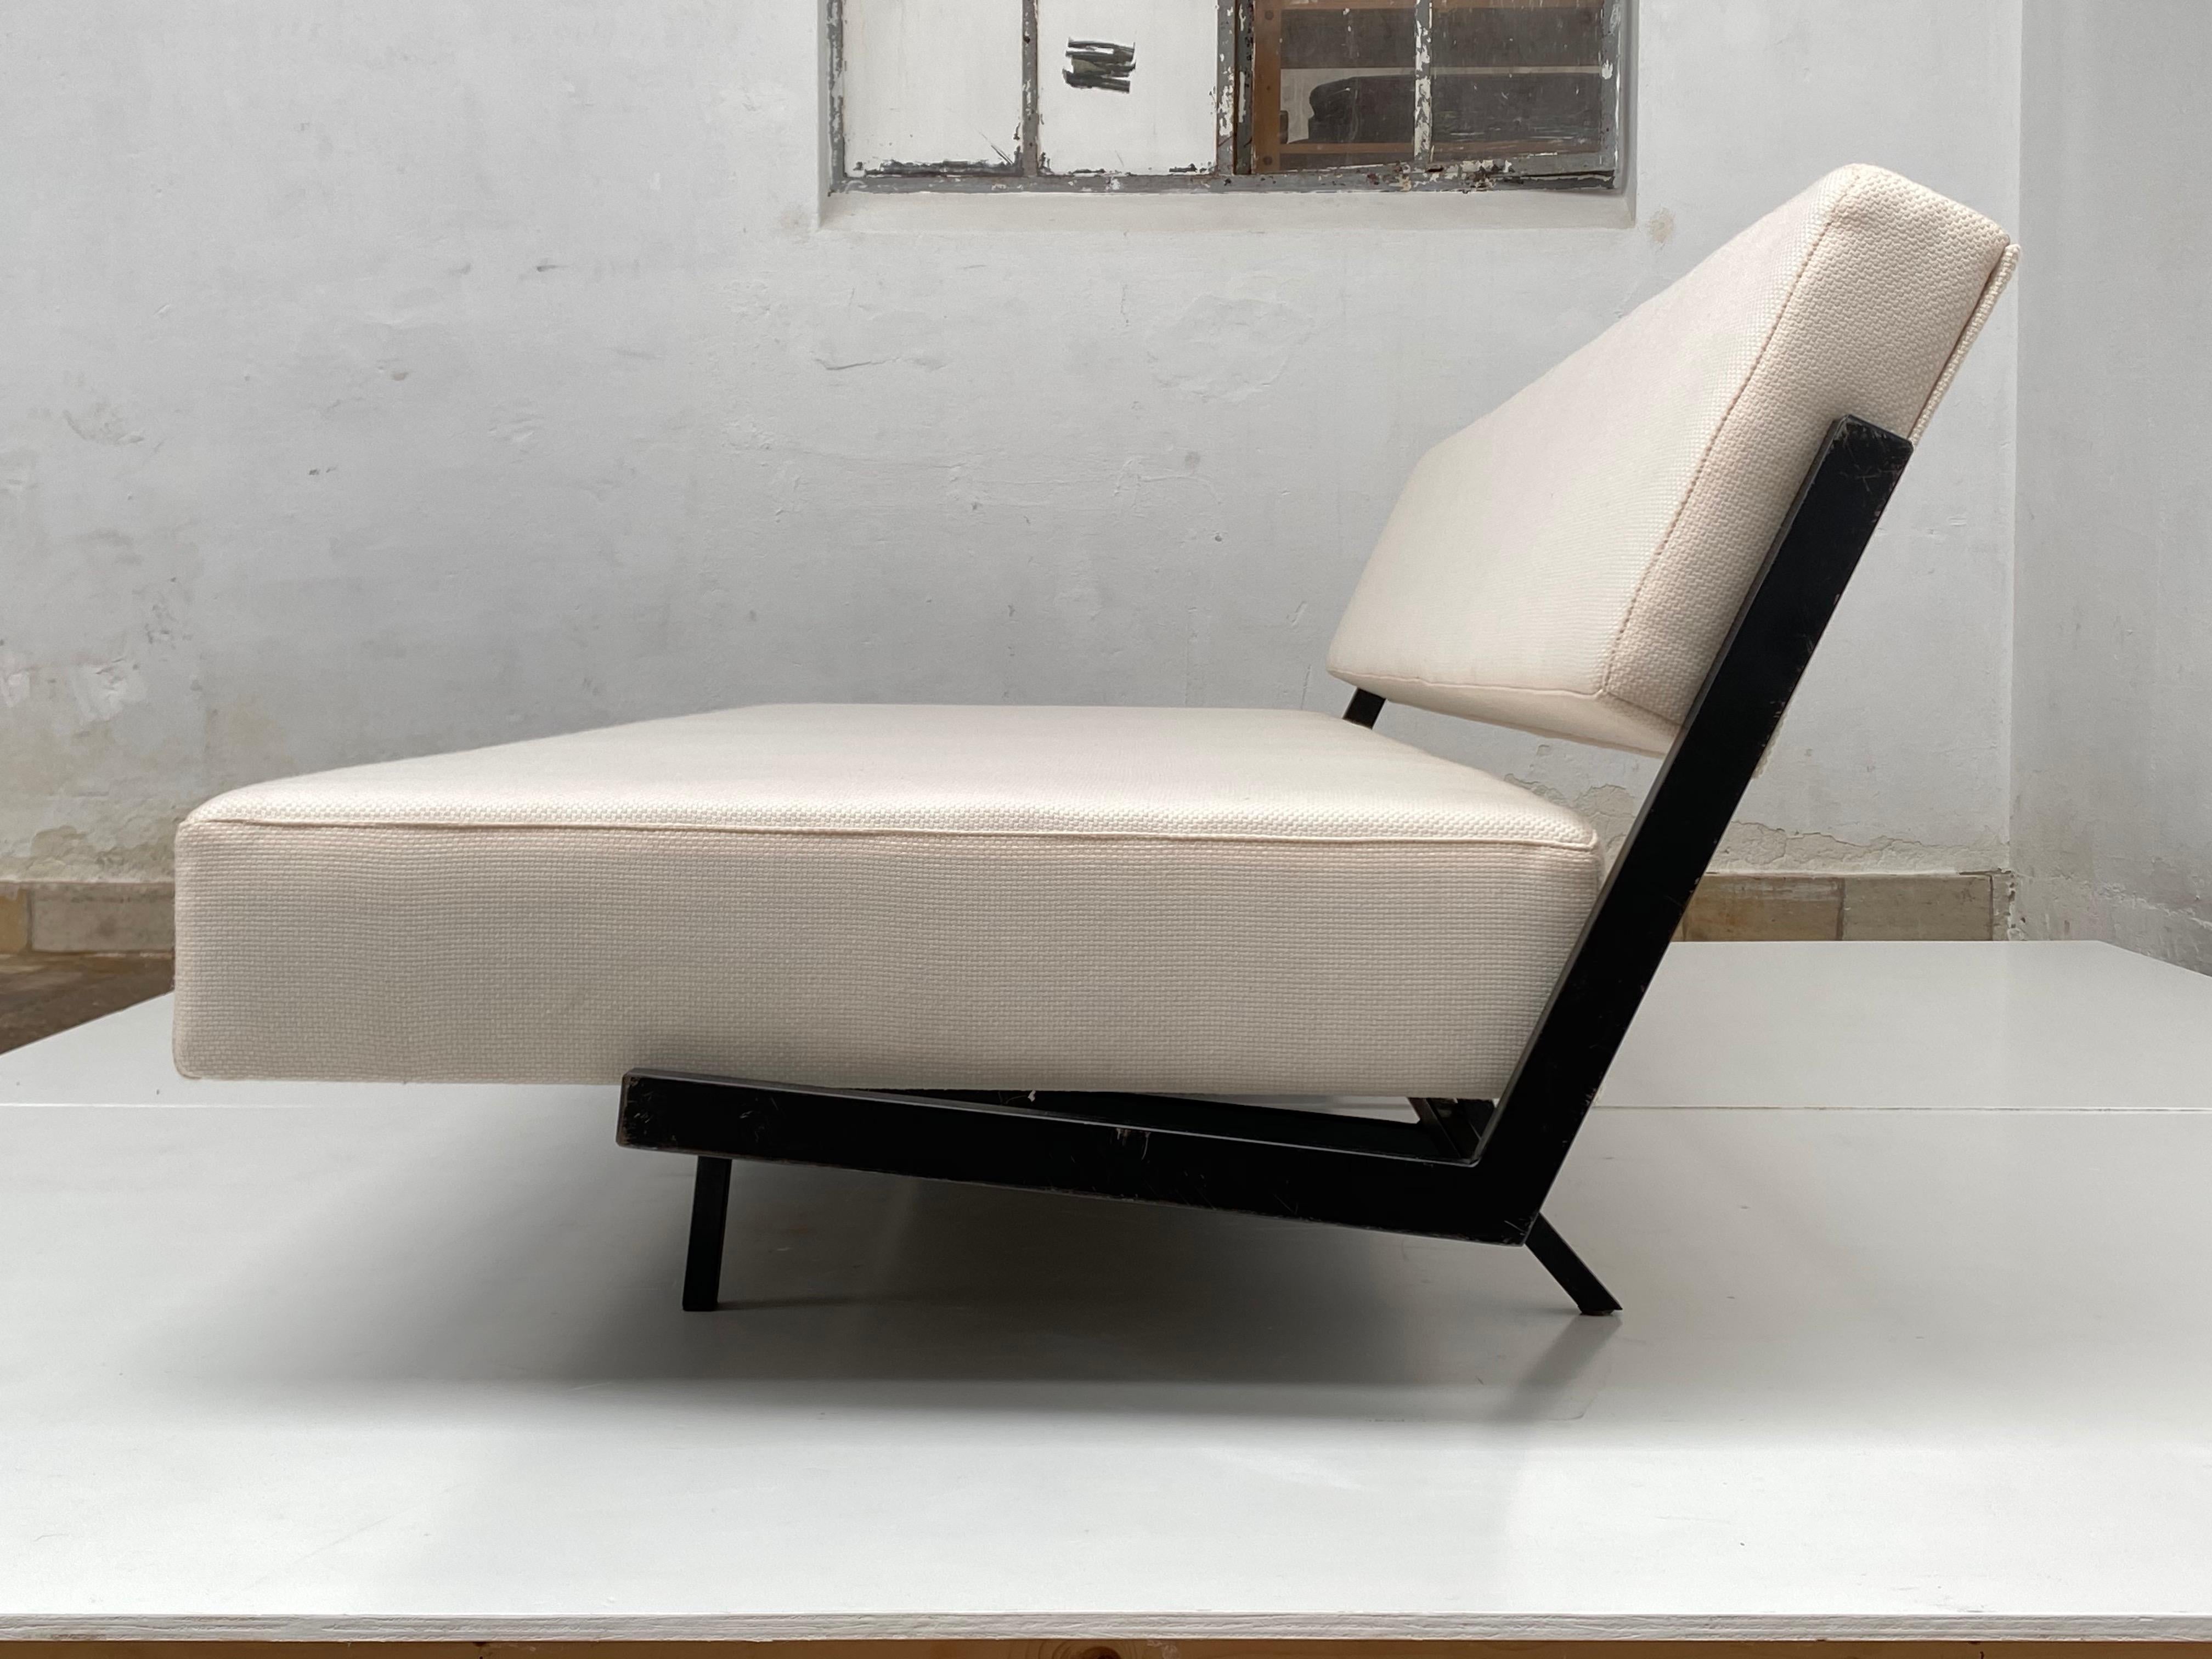 Ein niederländisches Schlafsofa mit minimalem und funktionellem Design aus der Jahrhundertmitte, das in 2 Positionen verwendet werden kann: Sitzen und Schlafen.

Dieses Tagesbett wurde höchstwahrscheinlich von der niederländischen Firma Royal